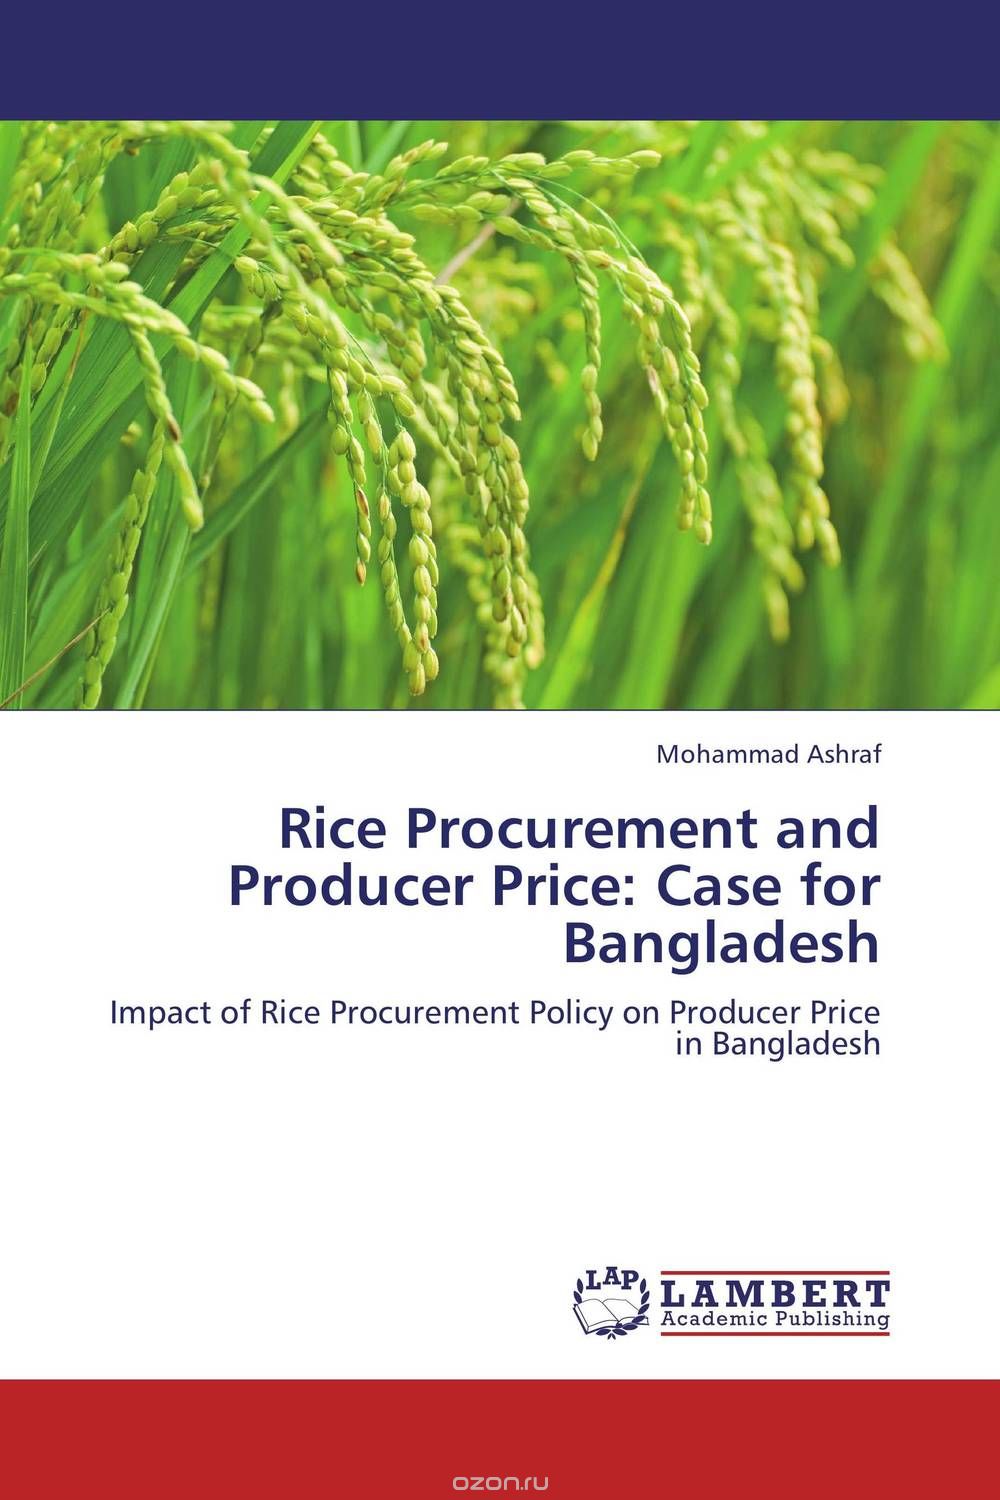 Скачать книгу "Rice Procurement and Producer Price: Case for Bangladesh"